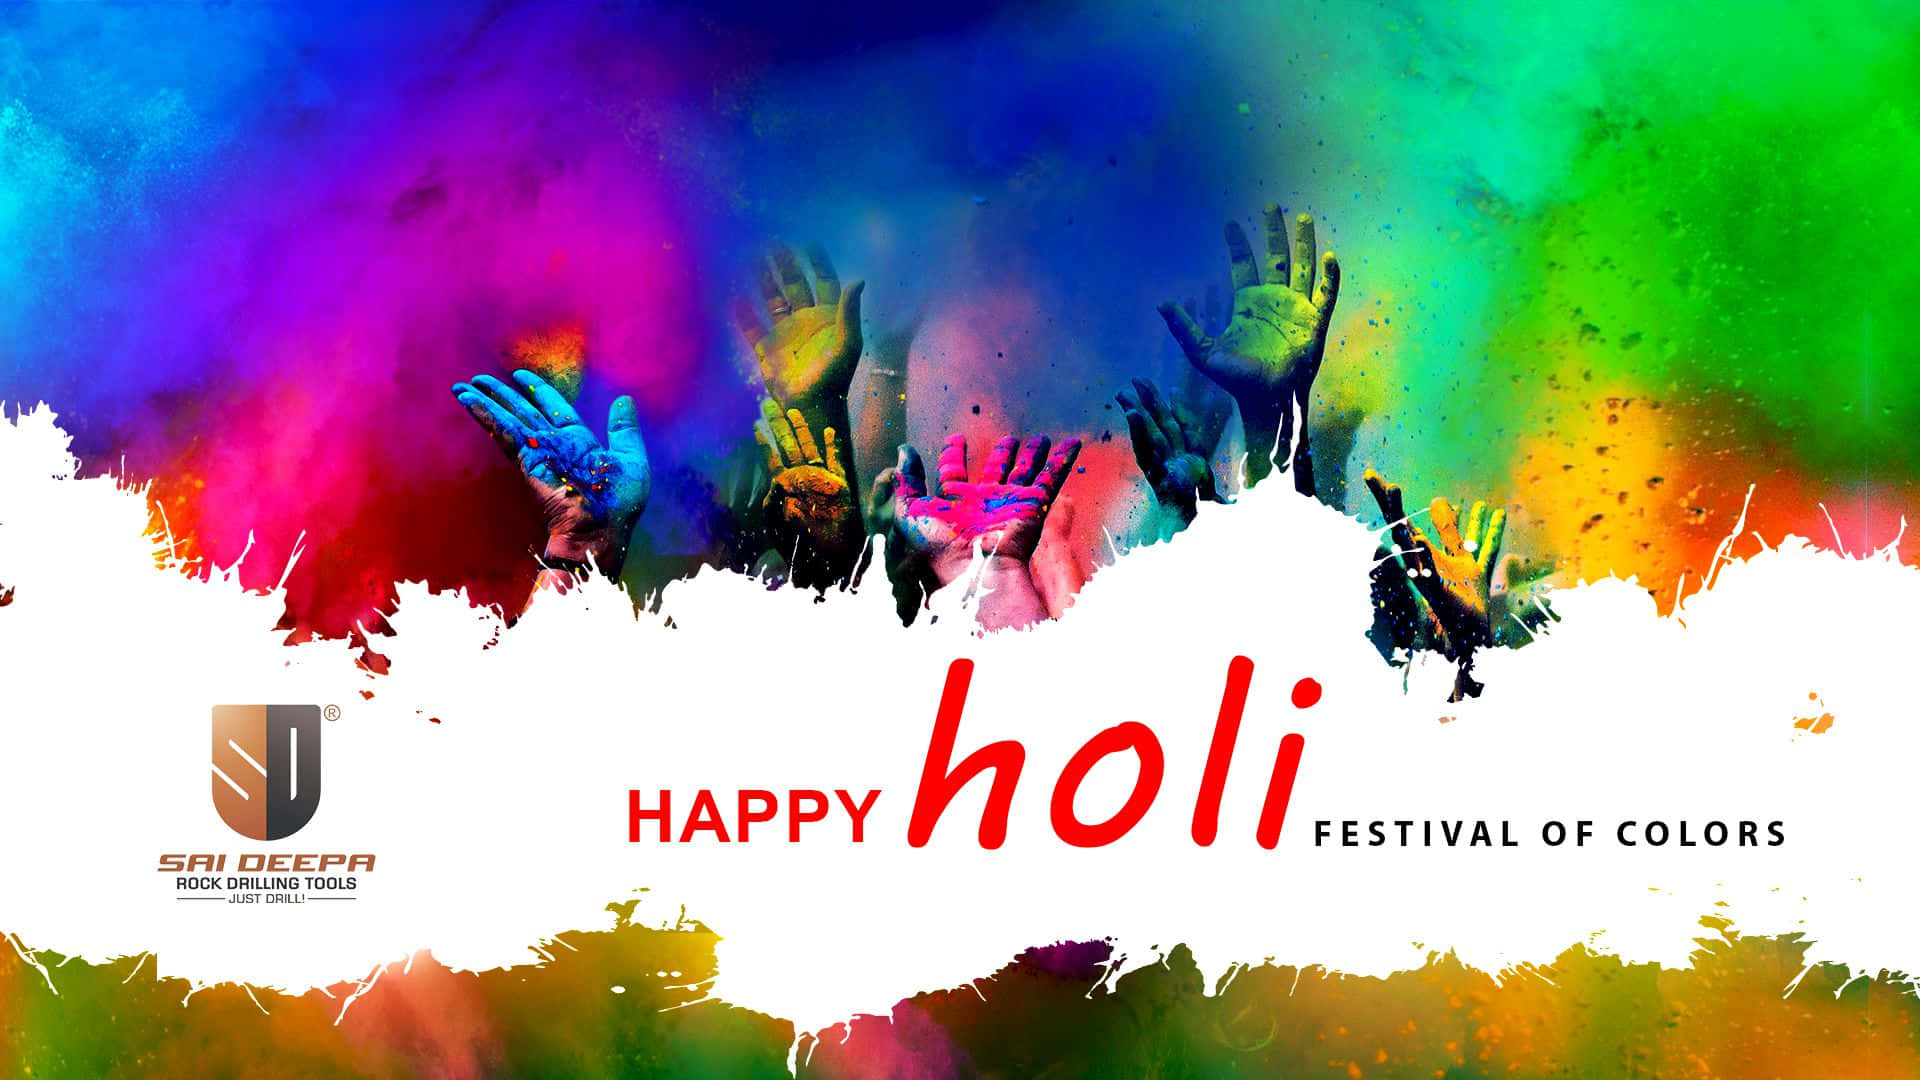 Celebrate the Colorful Festival of Holi